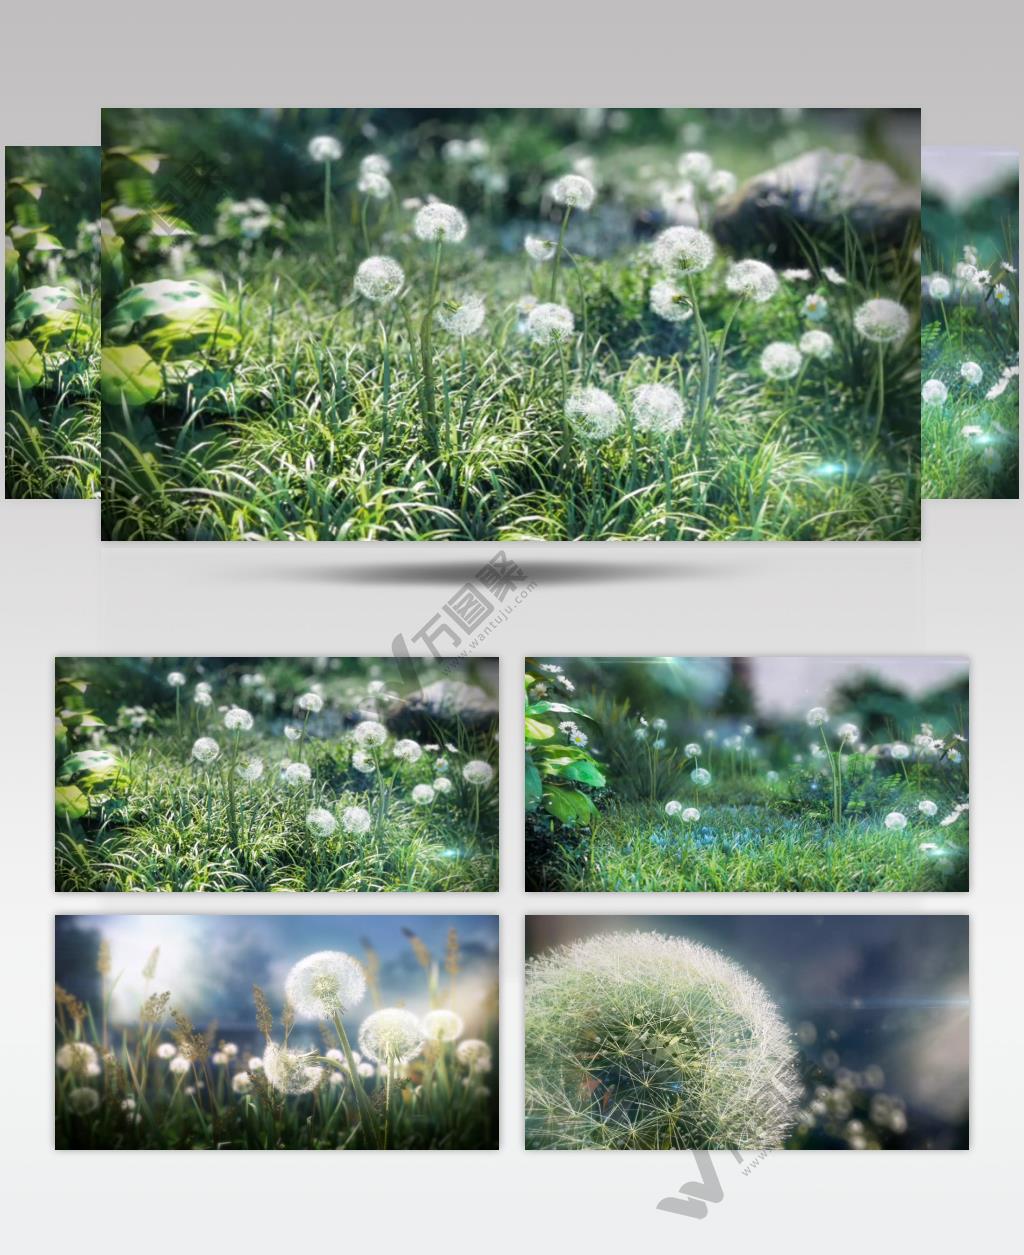 三维动画 高清视频素材 蒲公英 唯美画面 植物